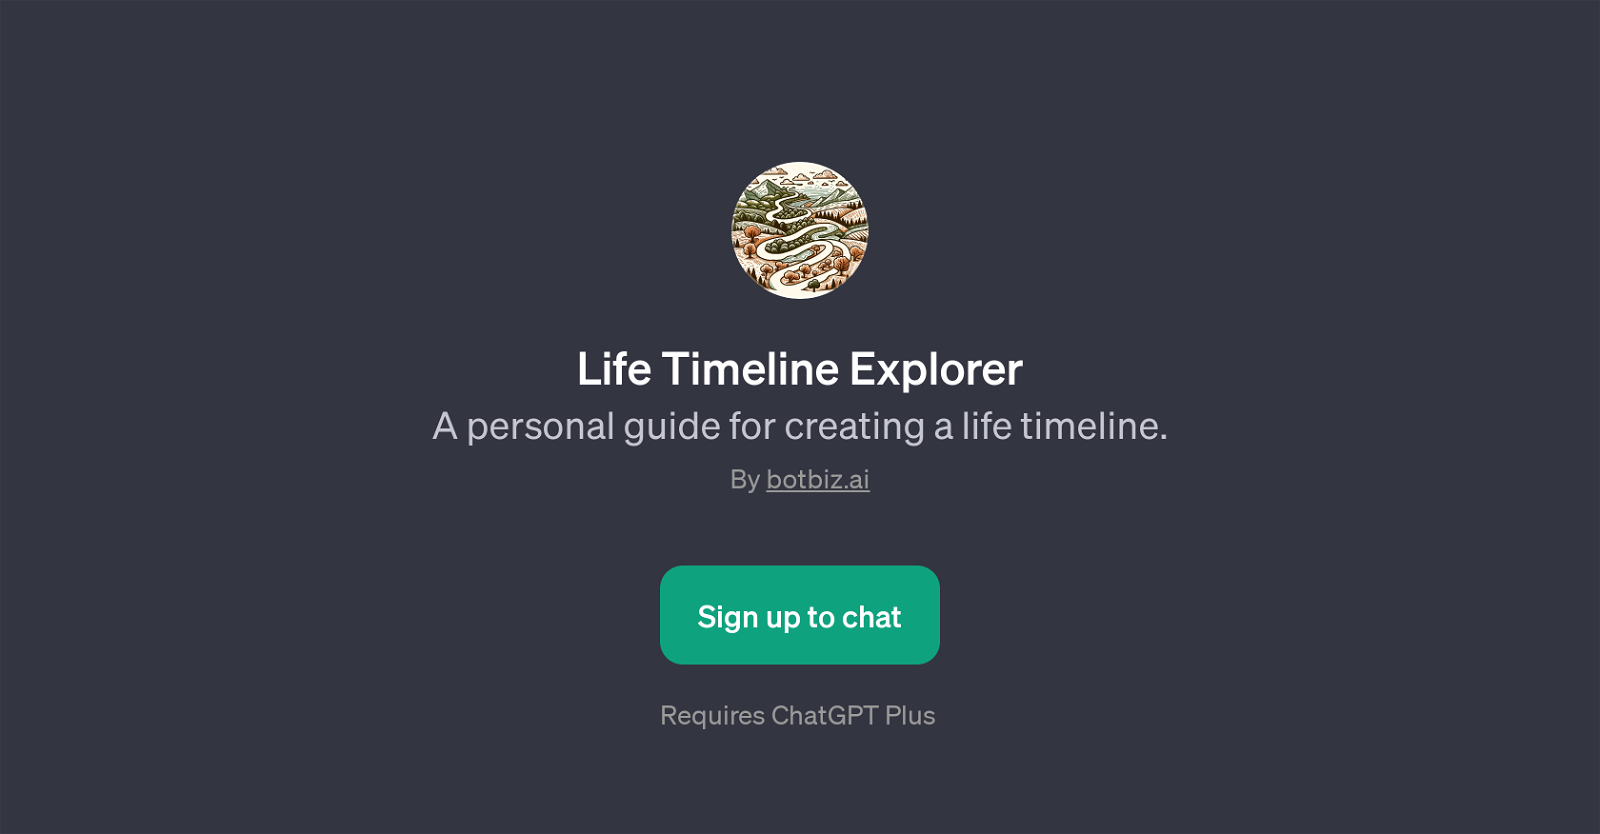 Life Timeline Explorer website